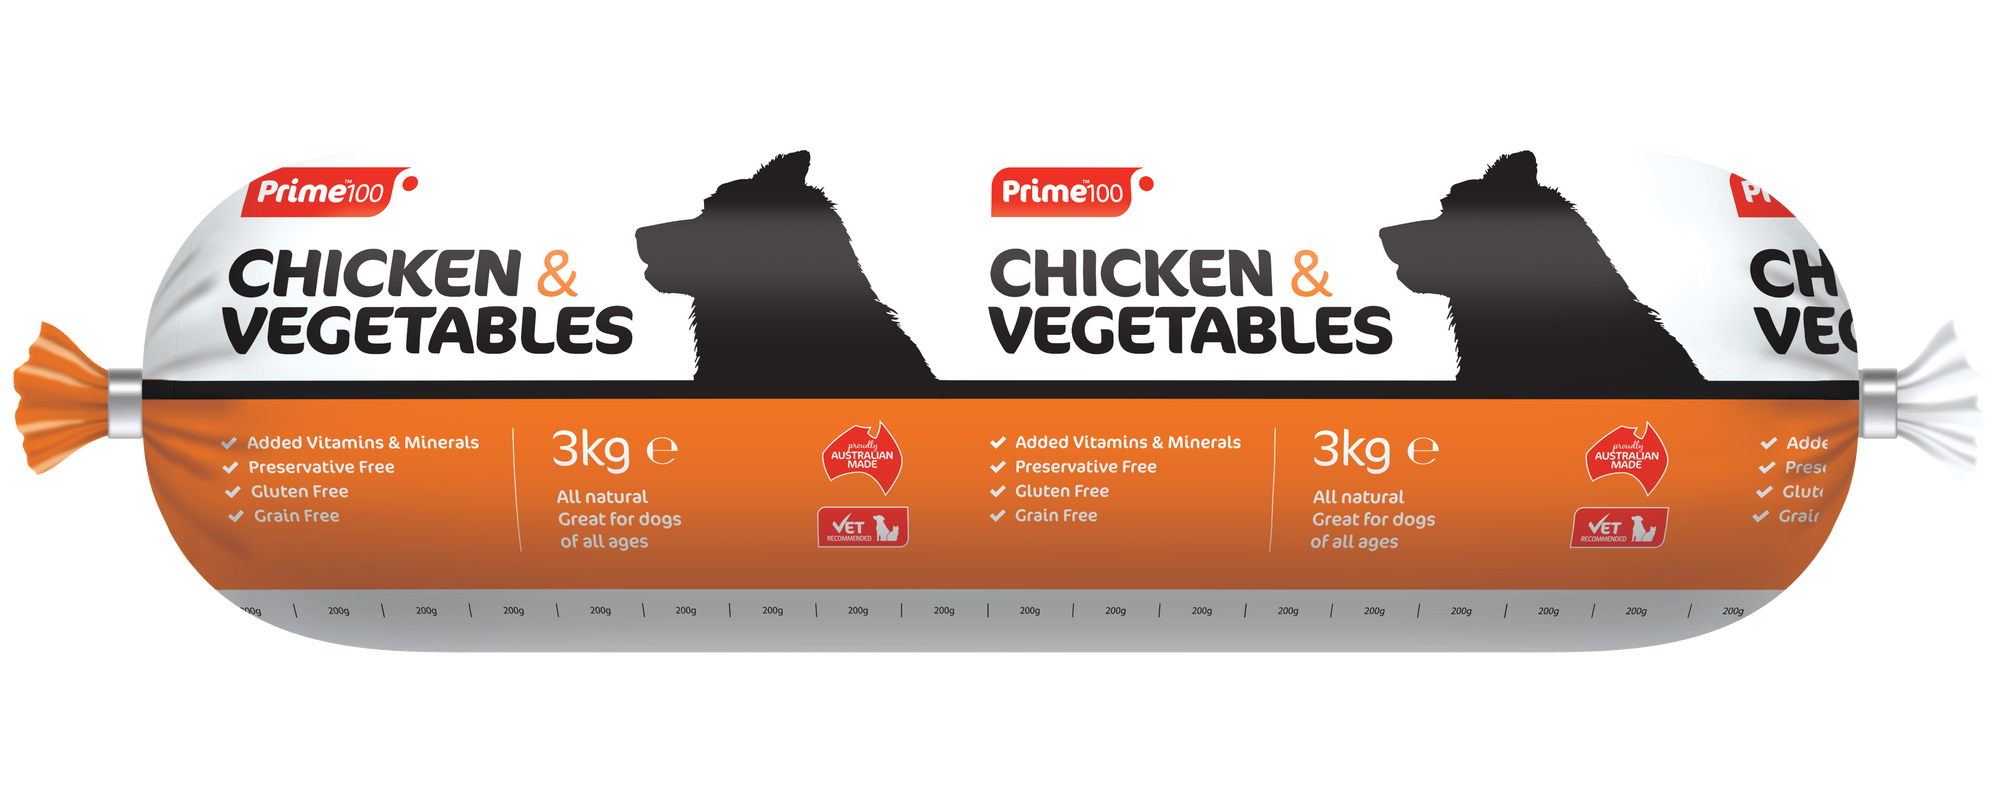 Prime 100 Chicken & Veg 3Kg - 9340710000121.png